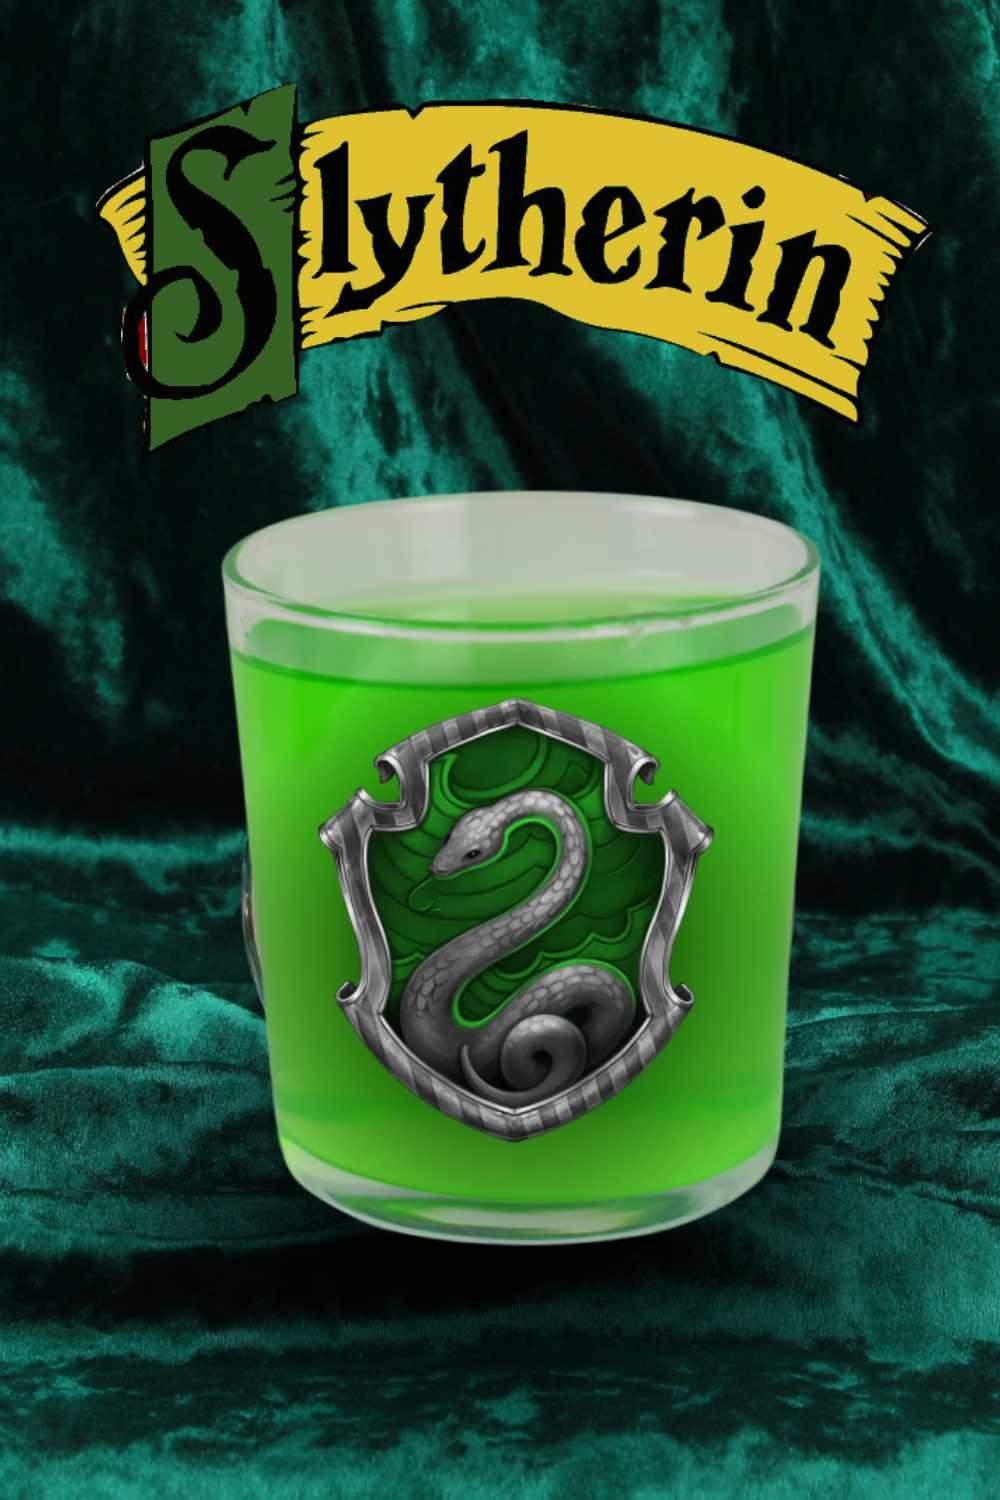 Harry Potter Slytherin Cocktail Recipe — Smartblend